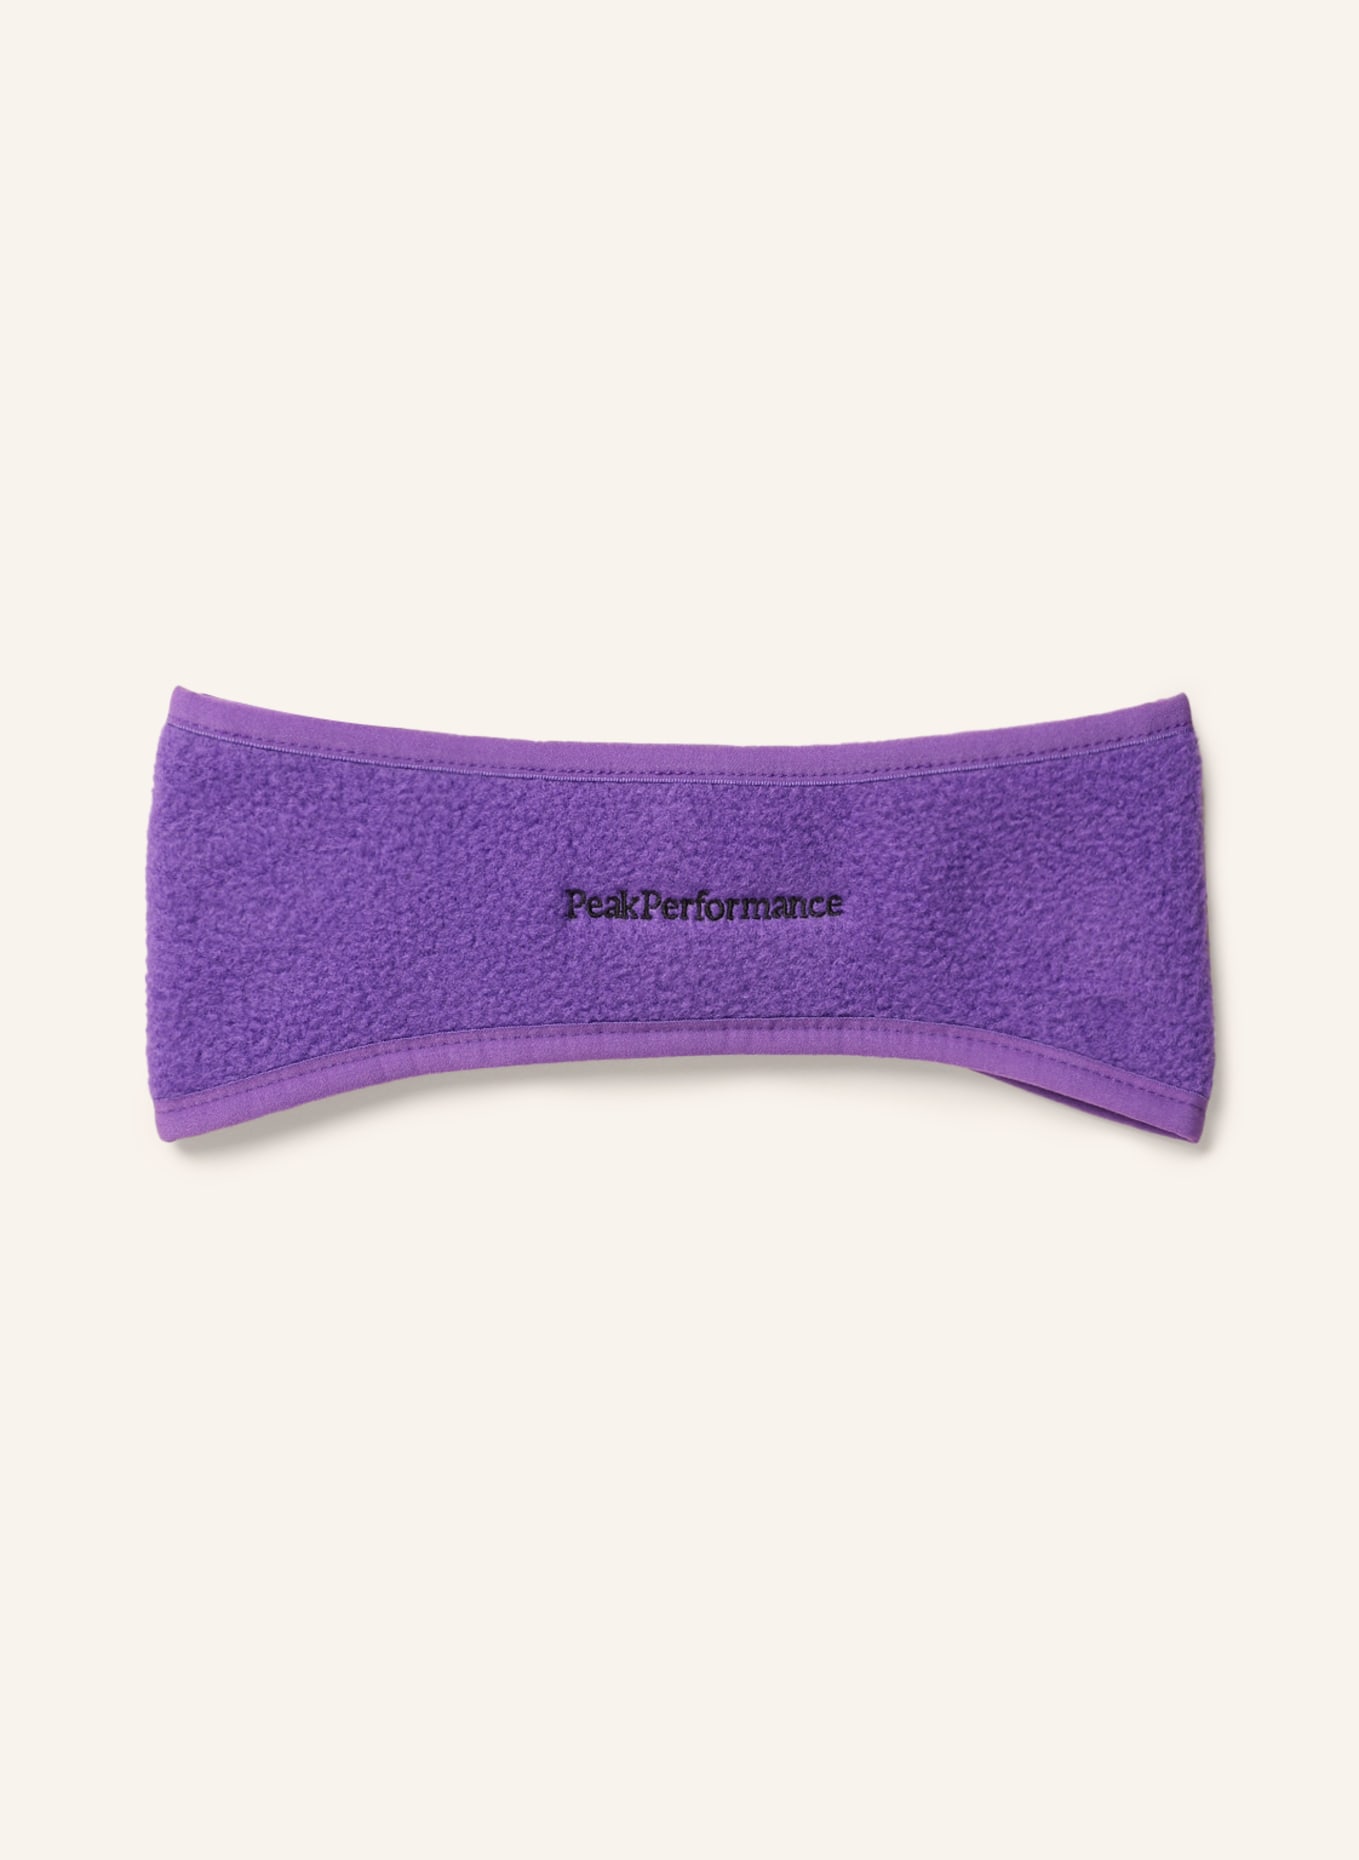 Peak Performance Headband, Color: PURPLE (Image 1)